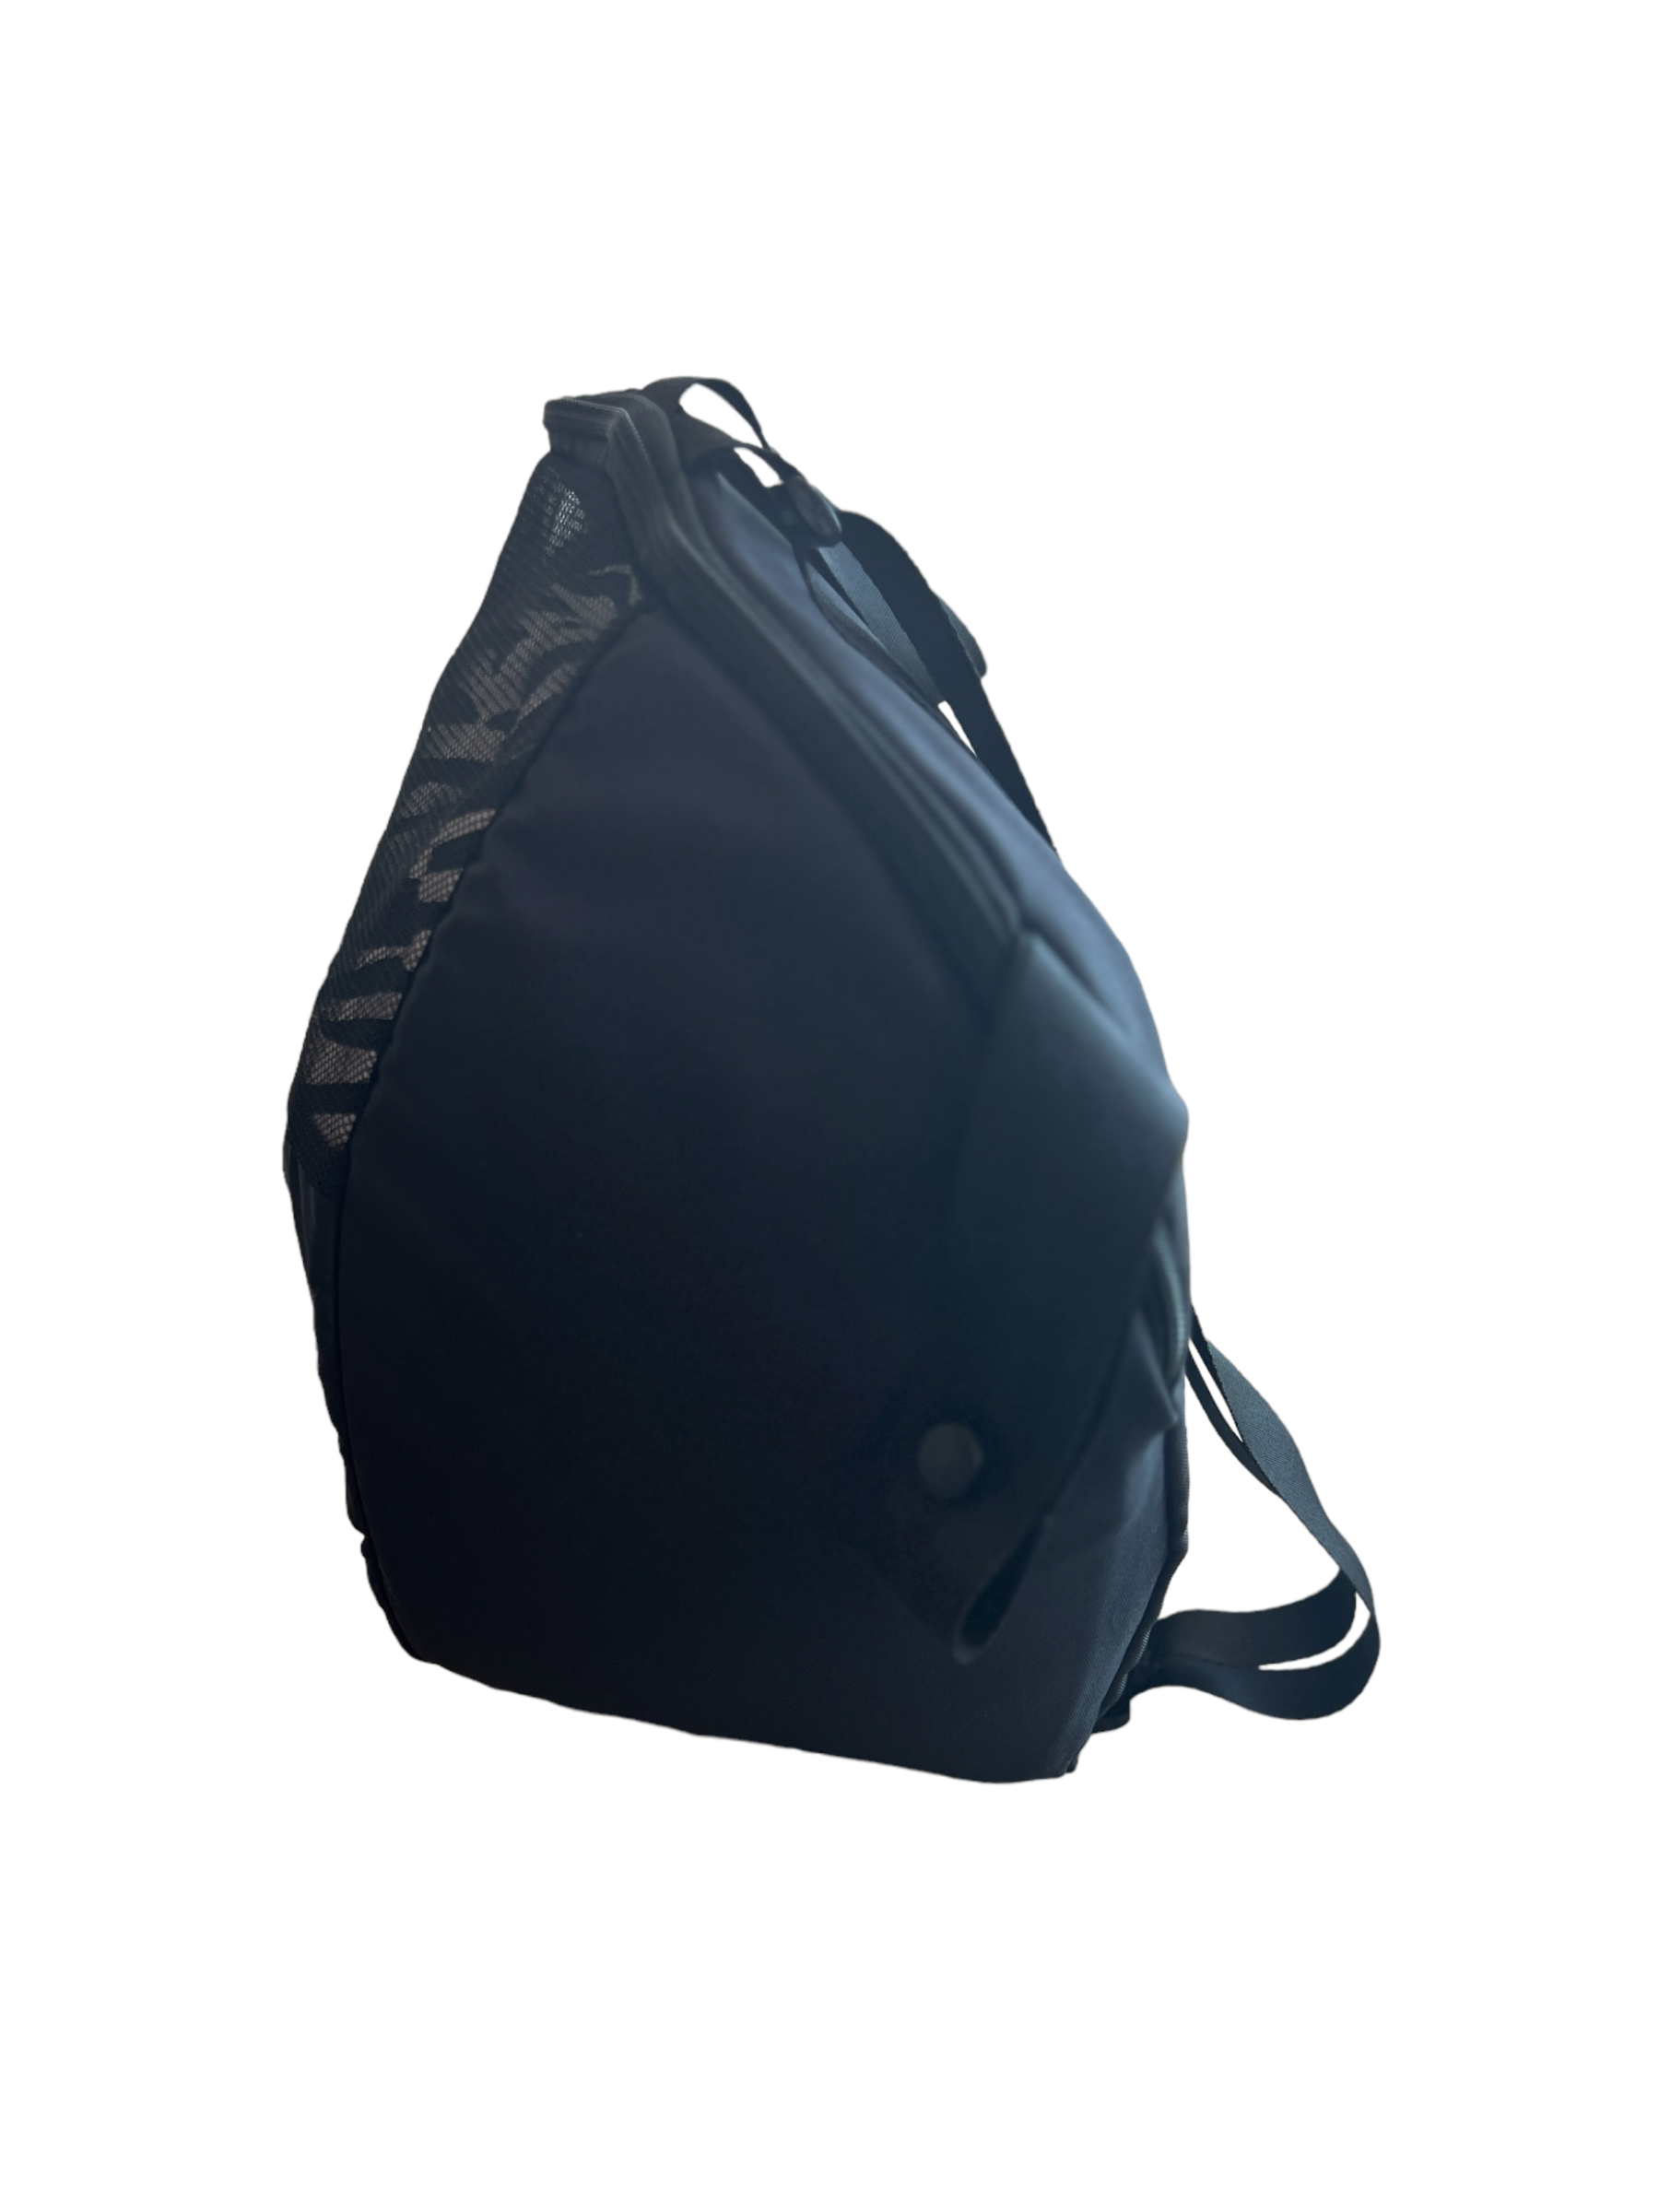 📸🎨 Oval Wheelchair 4 in 1 / Stroller Backpack Bag Backpacks SPIRIT SPARKPLUGS Black  